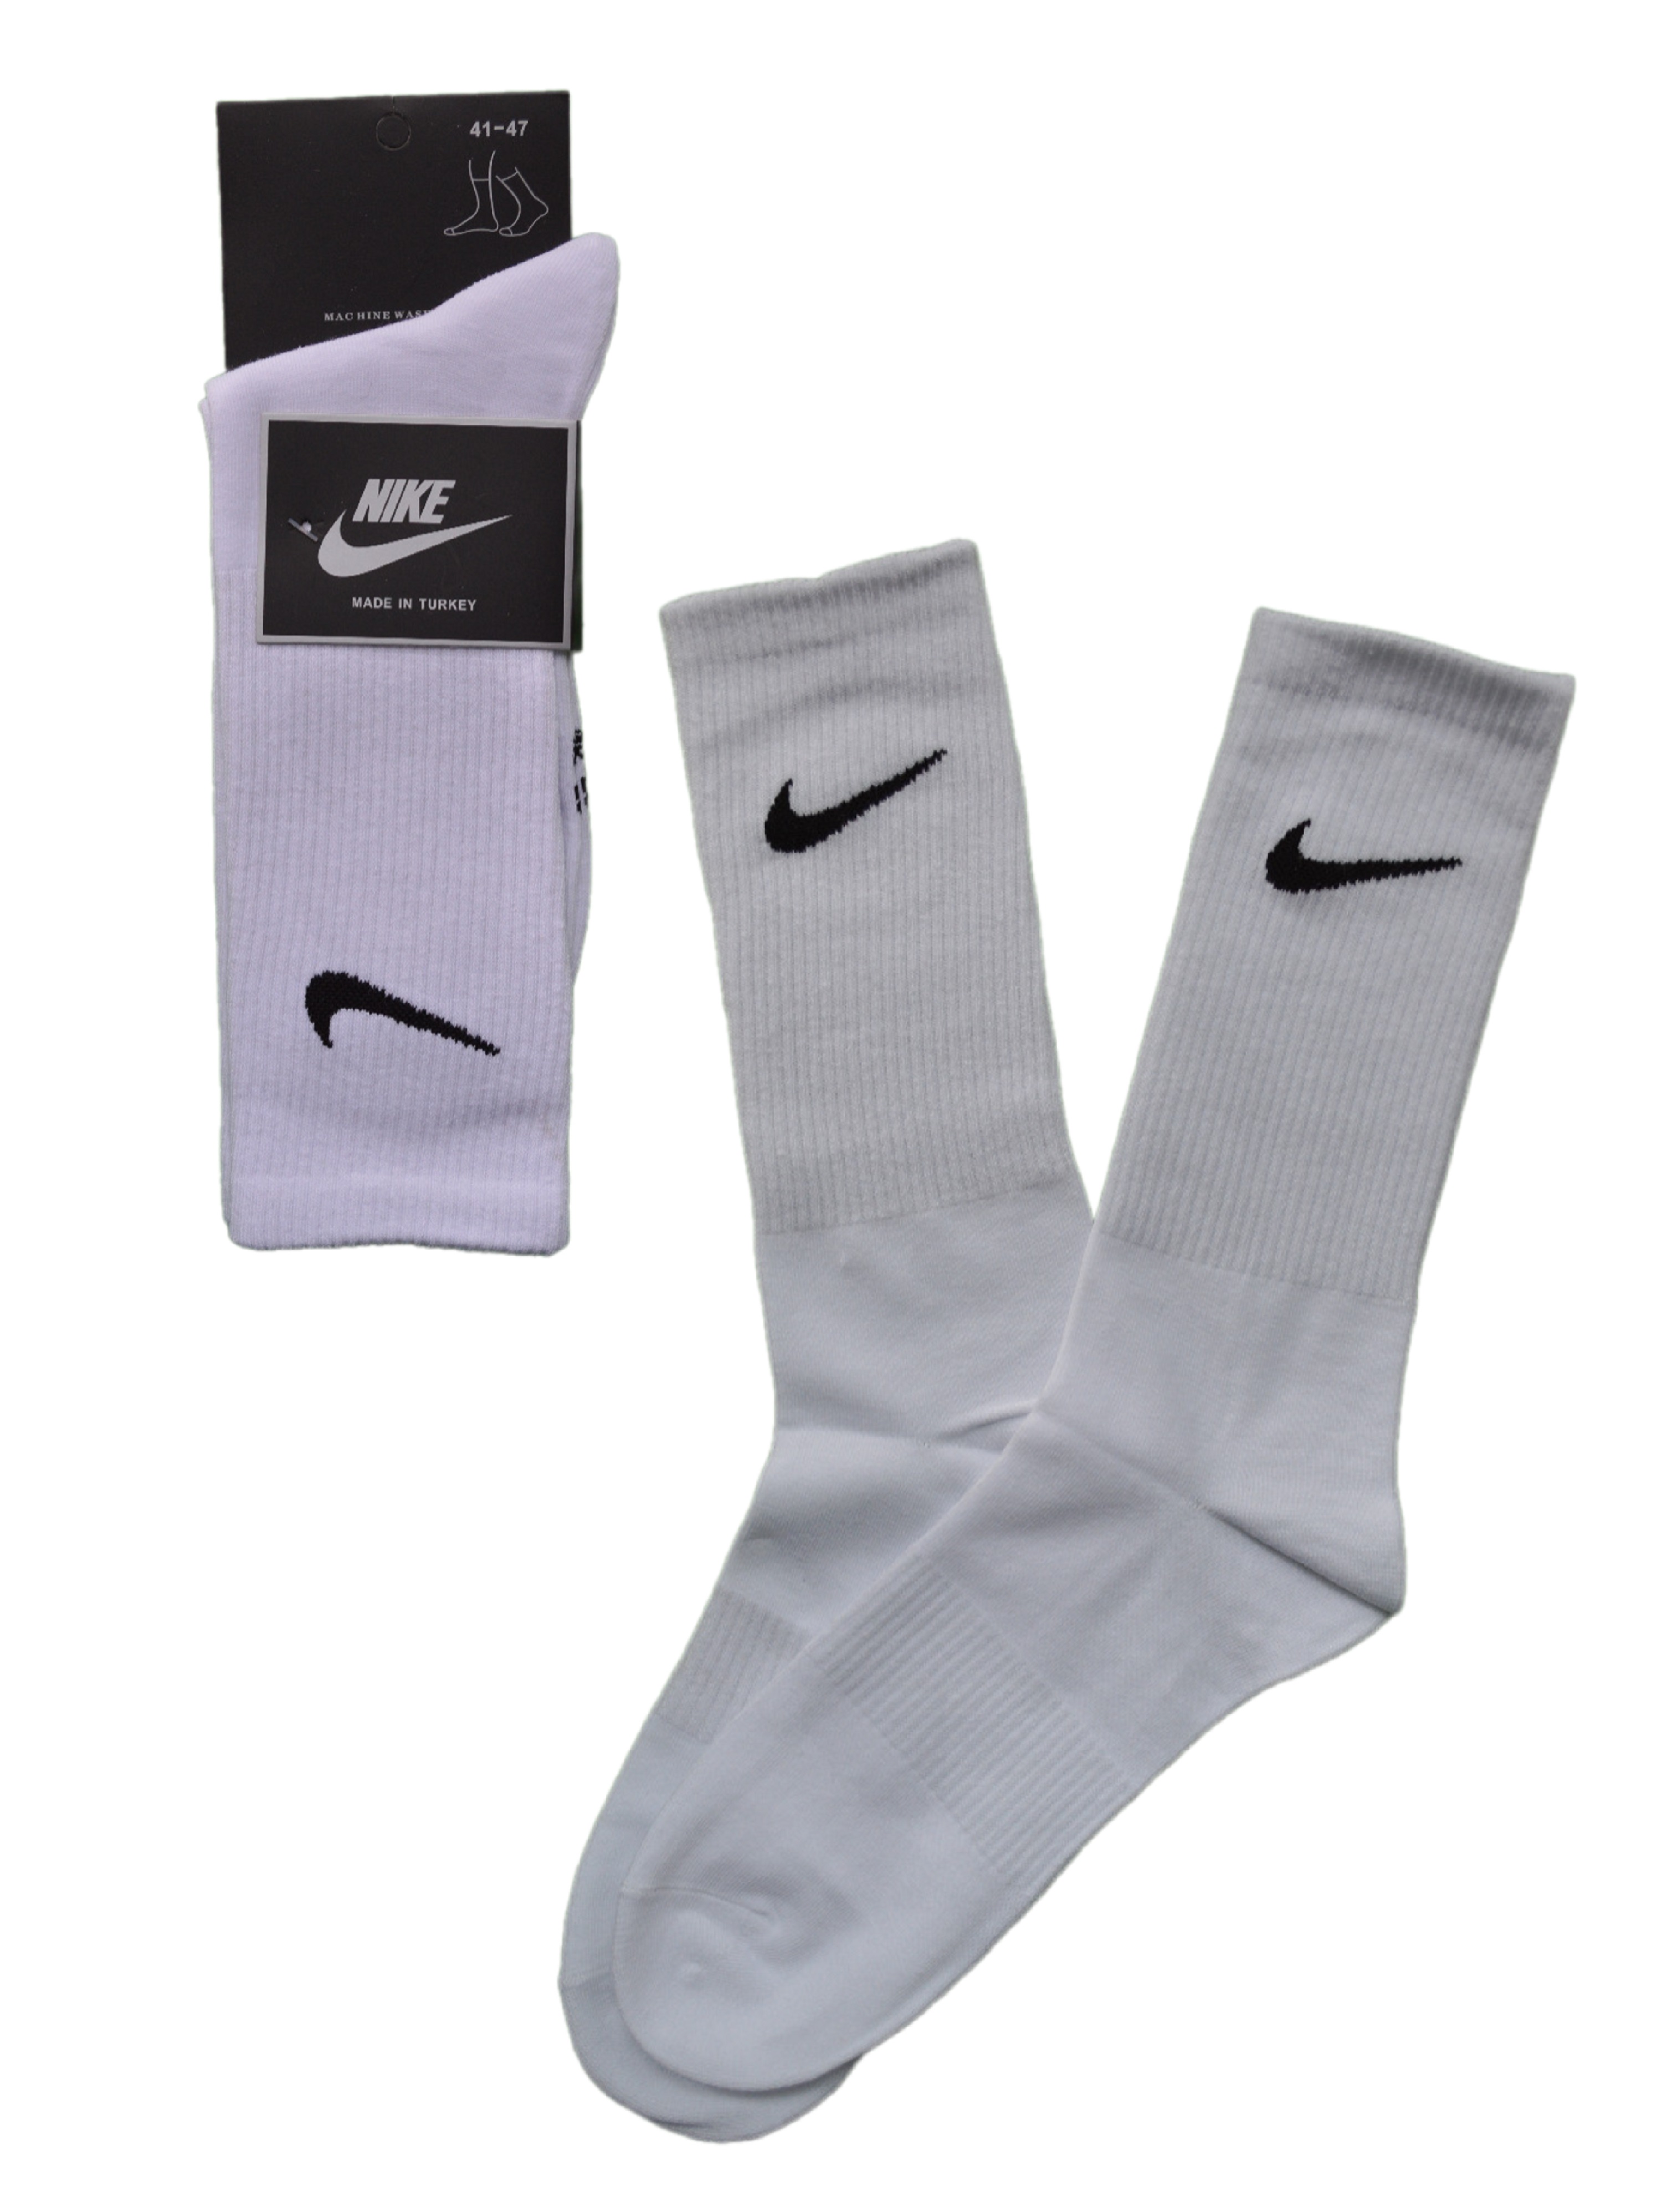 Комплект носков унисекс Nike NI-ND-25-2 белых 41-47, 2 пары